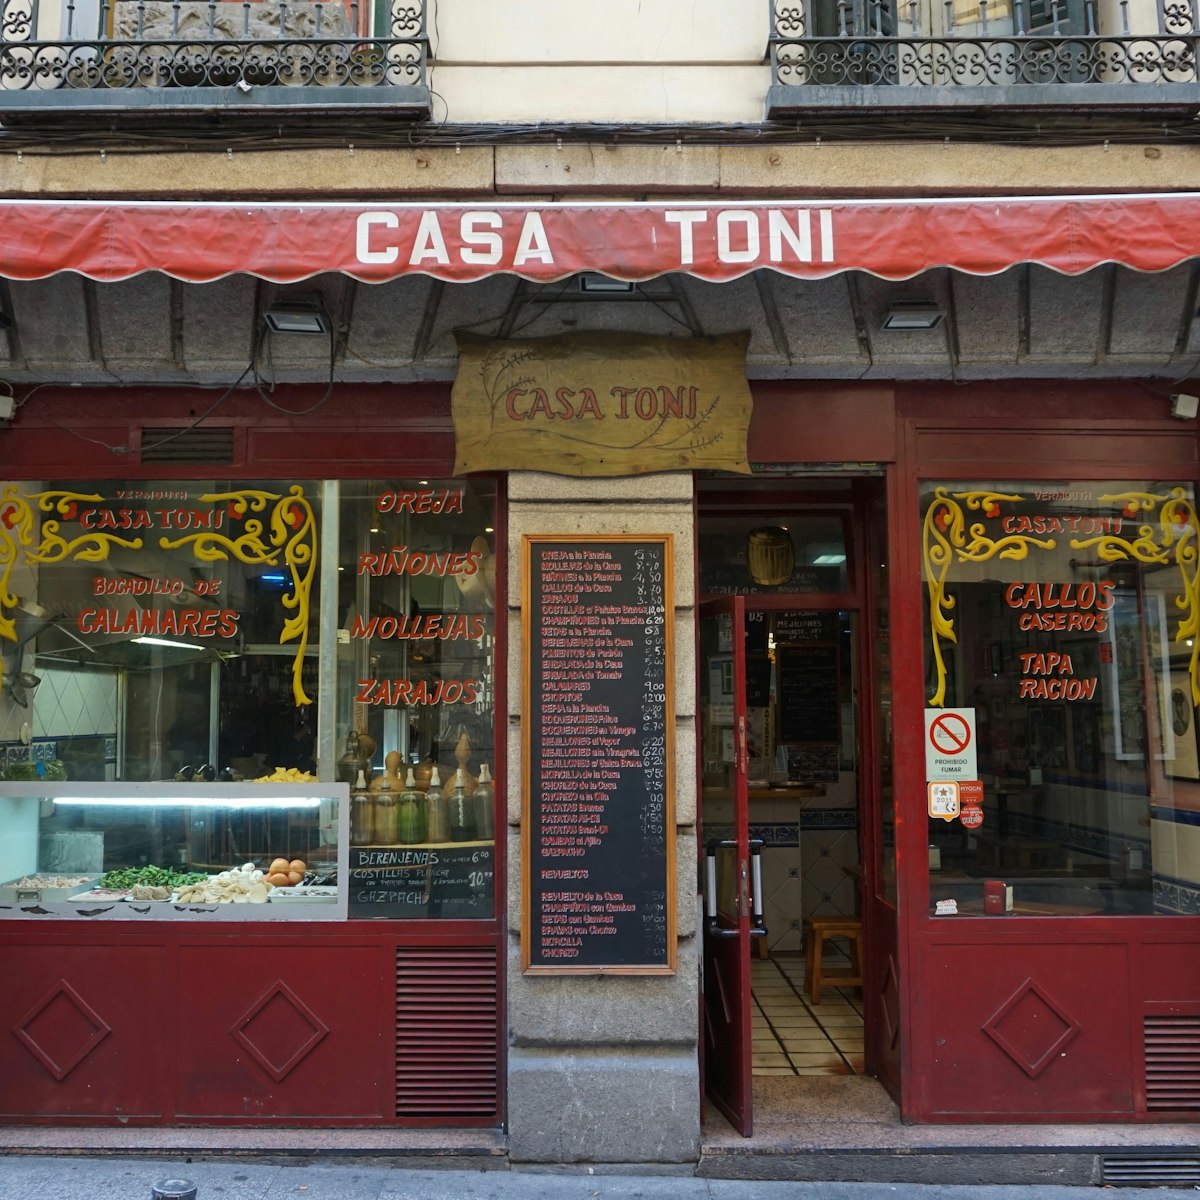 Casa Toni's exterior in the Huertas neighborhood.